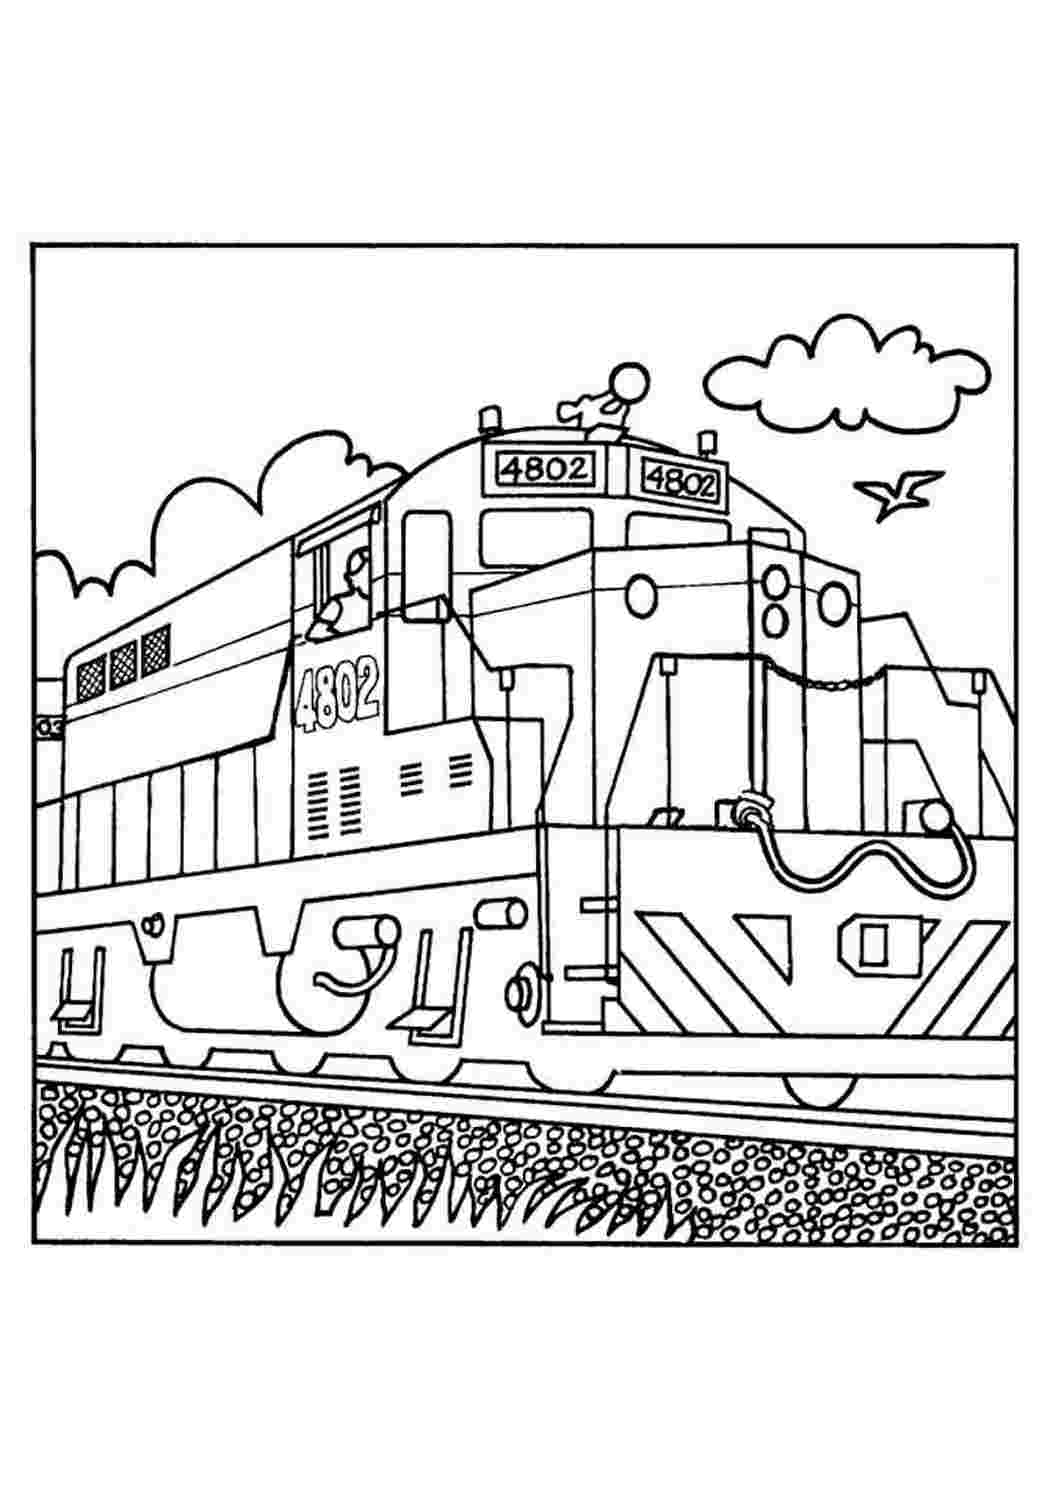 Раскраска поезда с вагонами, паровозов, локомотивов.